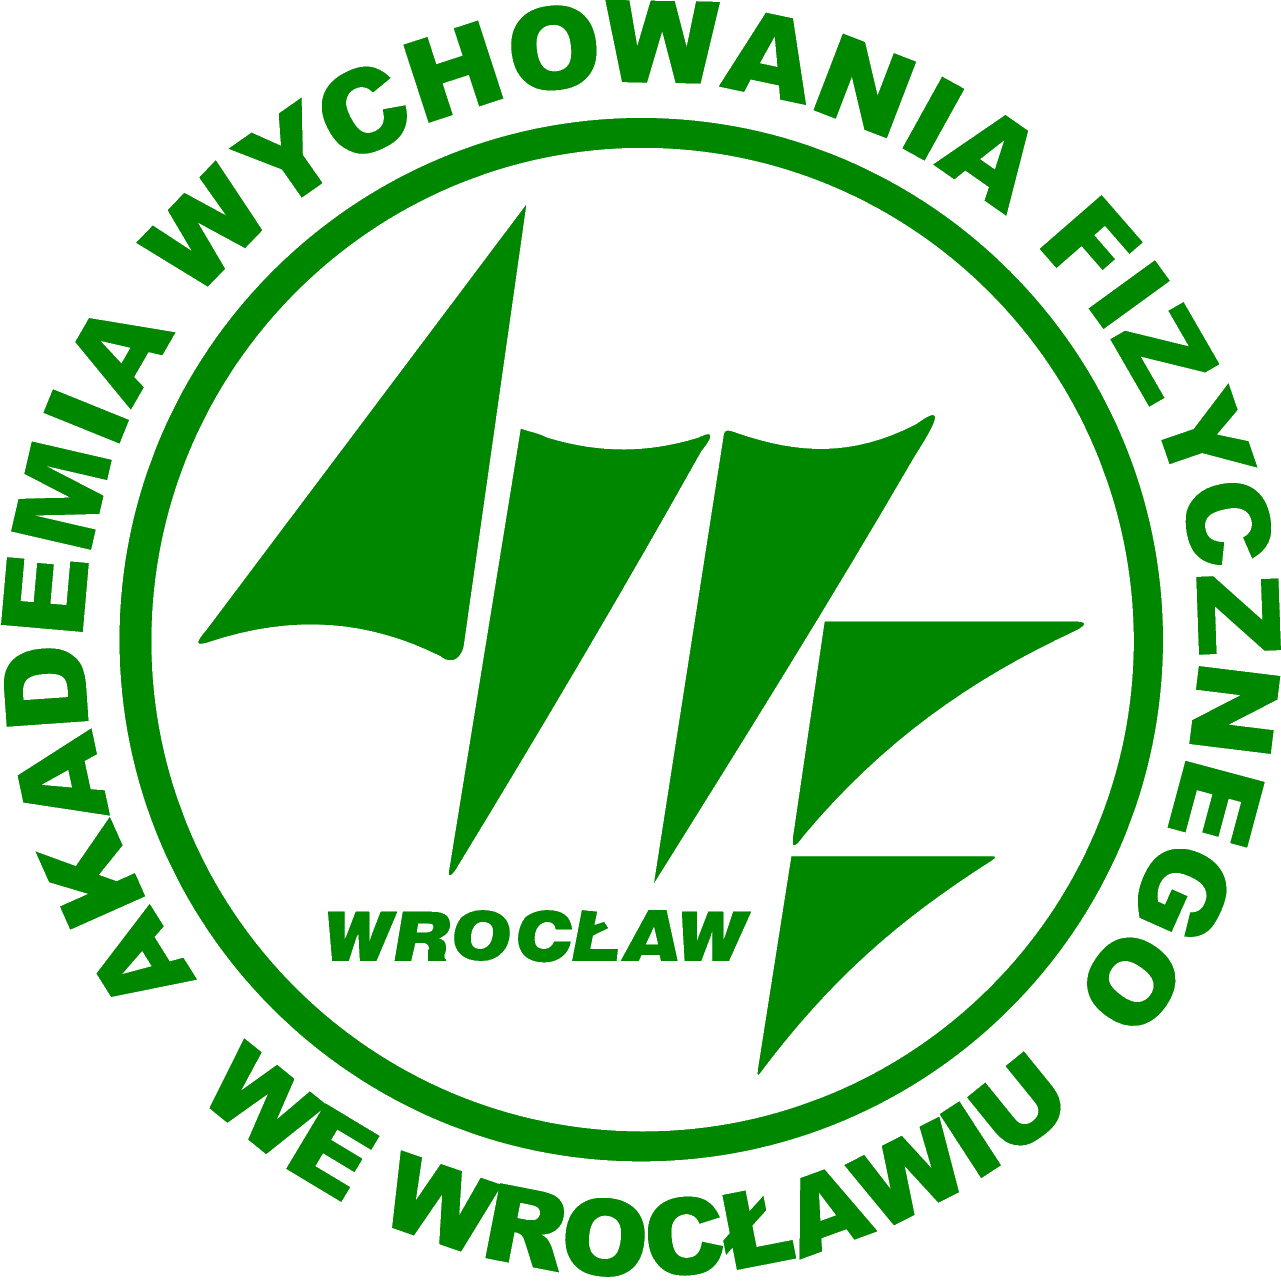 AWF Wrocław Logo photo - 1